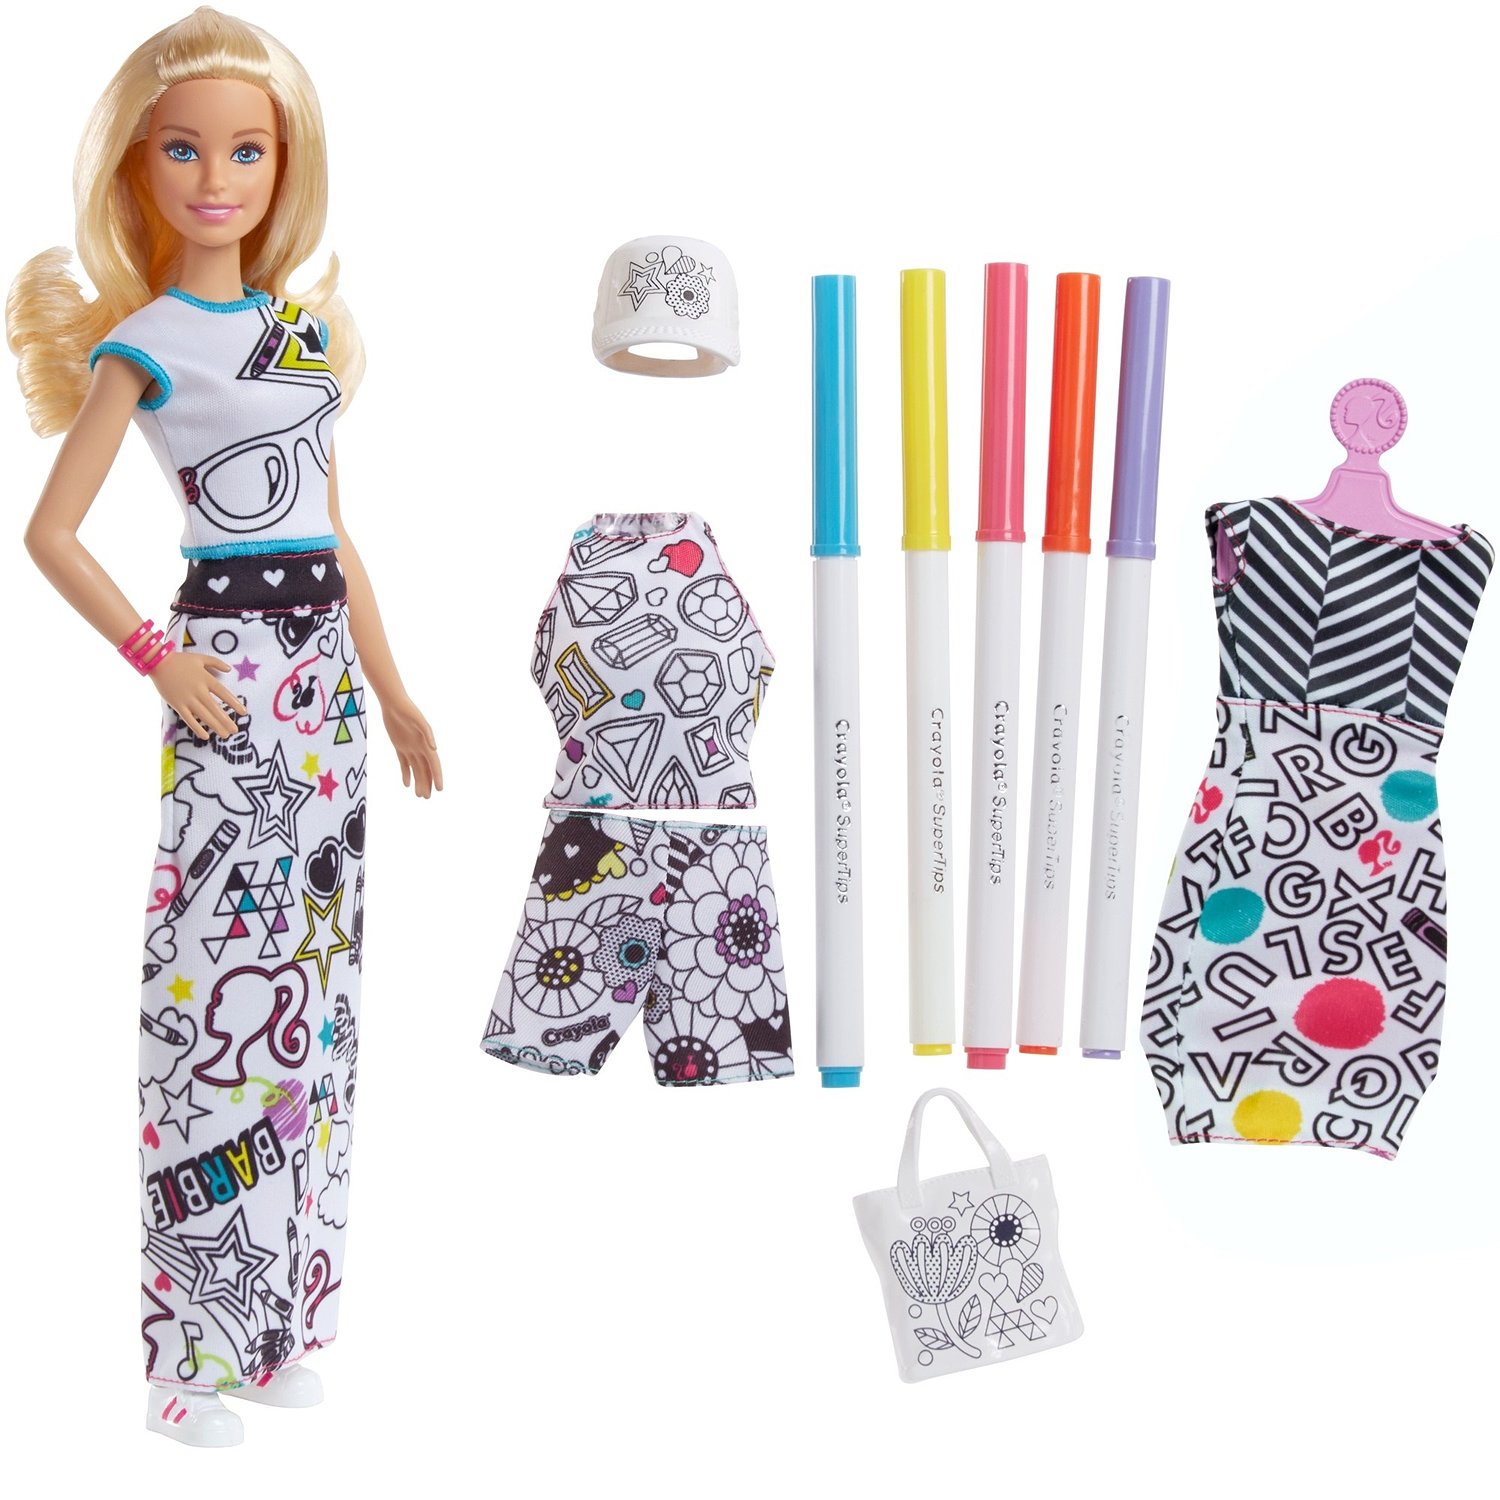 Куклы Барби с роскошными фигурами, созданные для бесконечных модных экспериментов